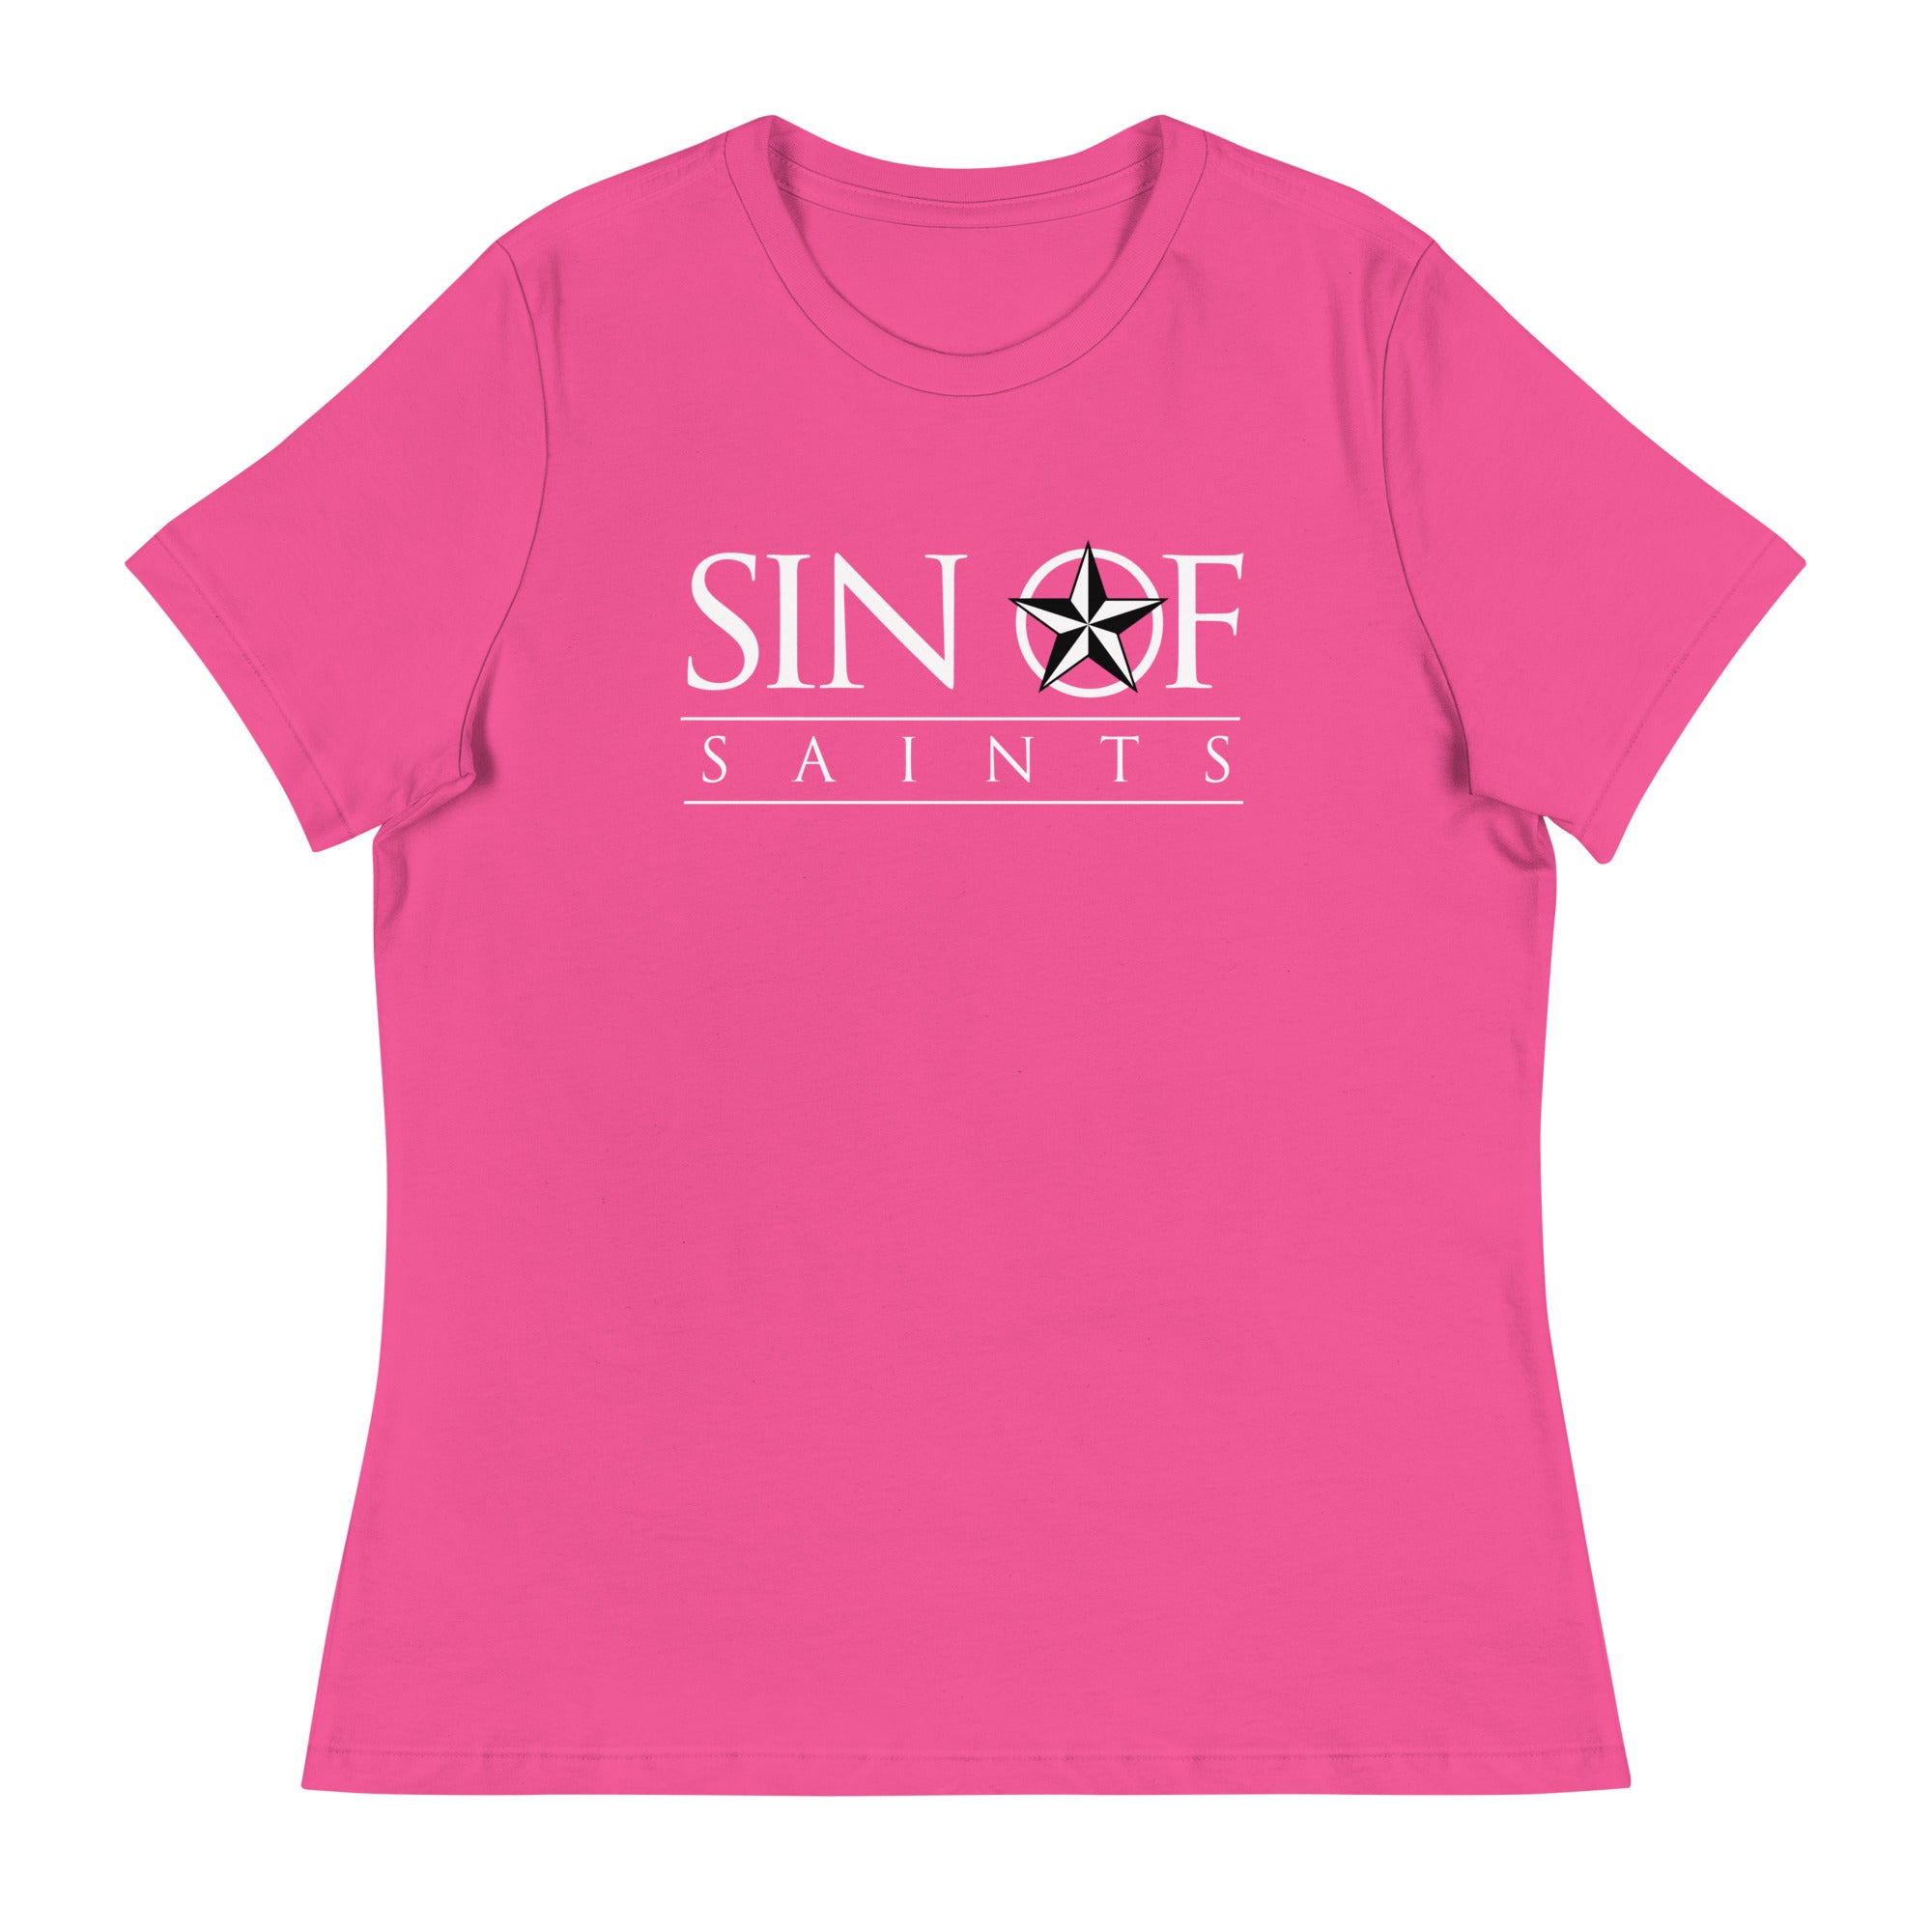 SOS Women's Relaxed T-Shirt V2